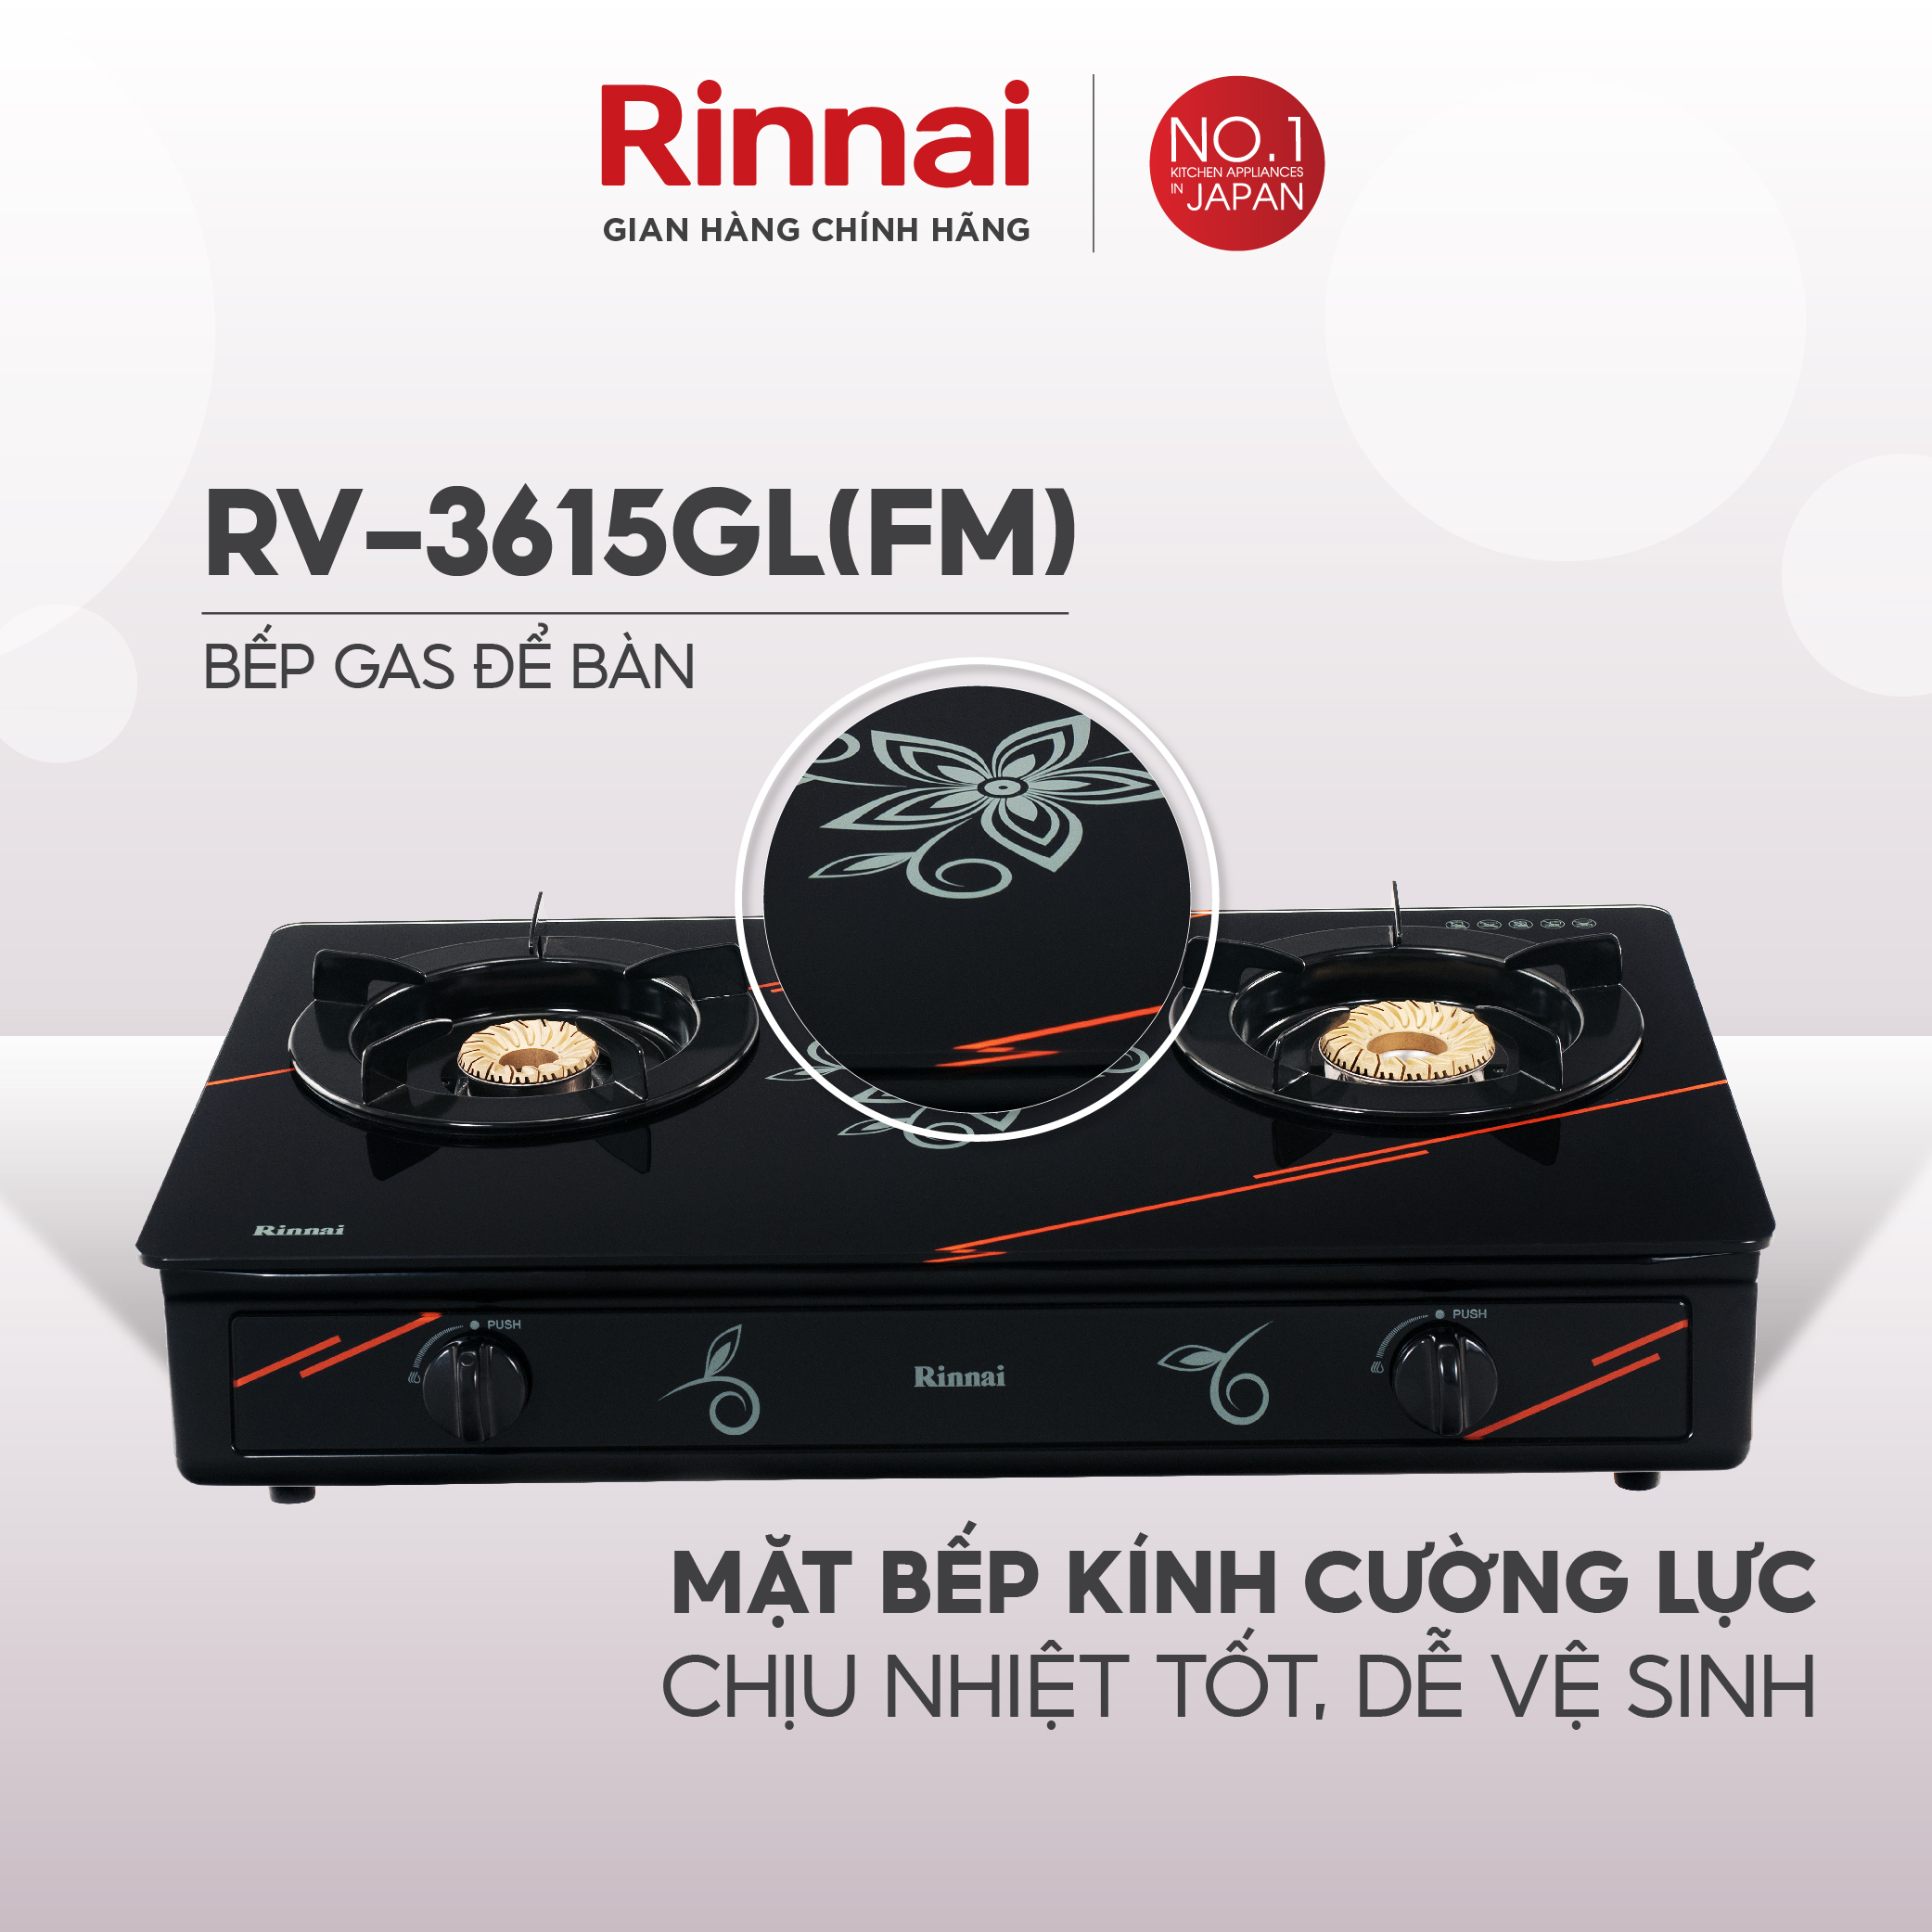 Bếp gas dương Rinnai RV-3615GL(FM) mặt bếp kính và kiềng bếp men - Hàng chính hãng.